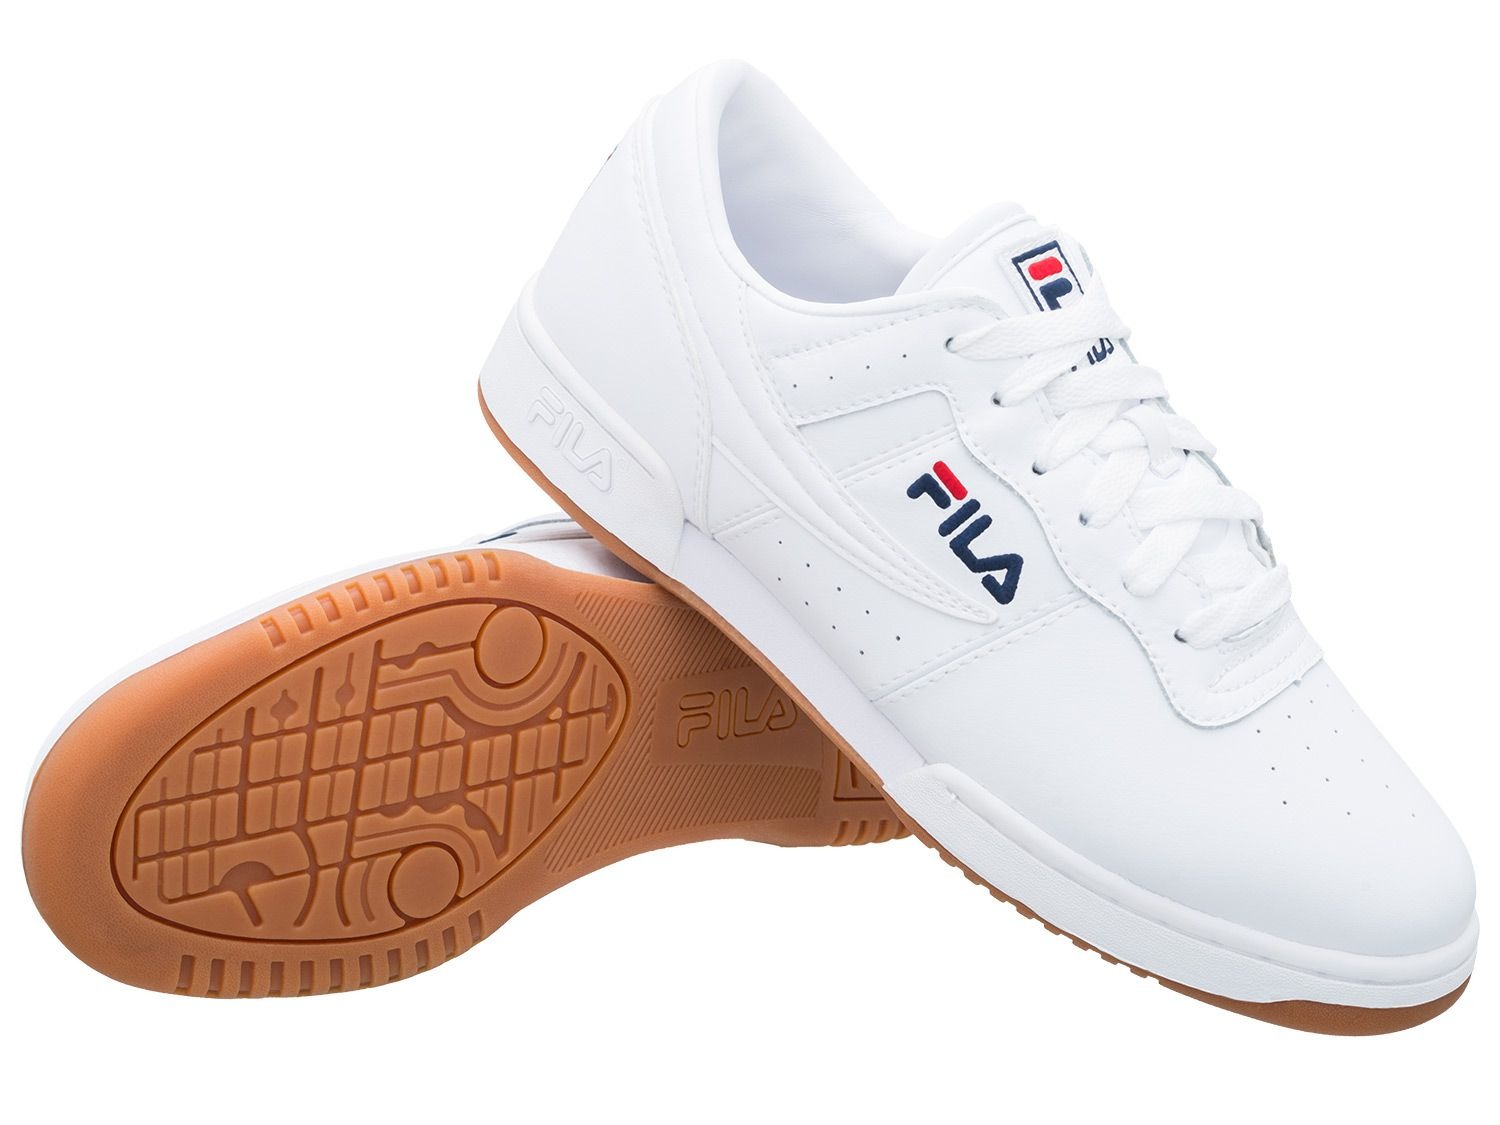 fila white shoes original